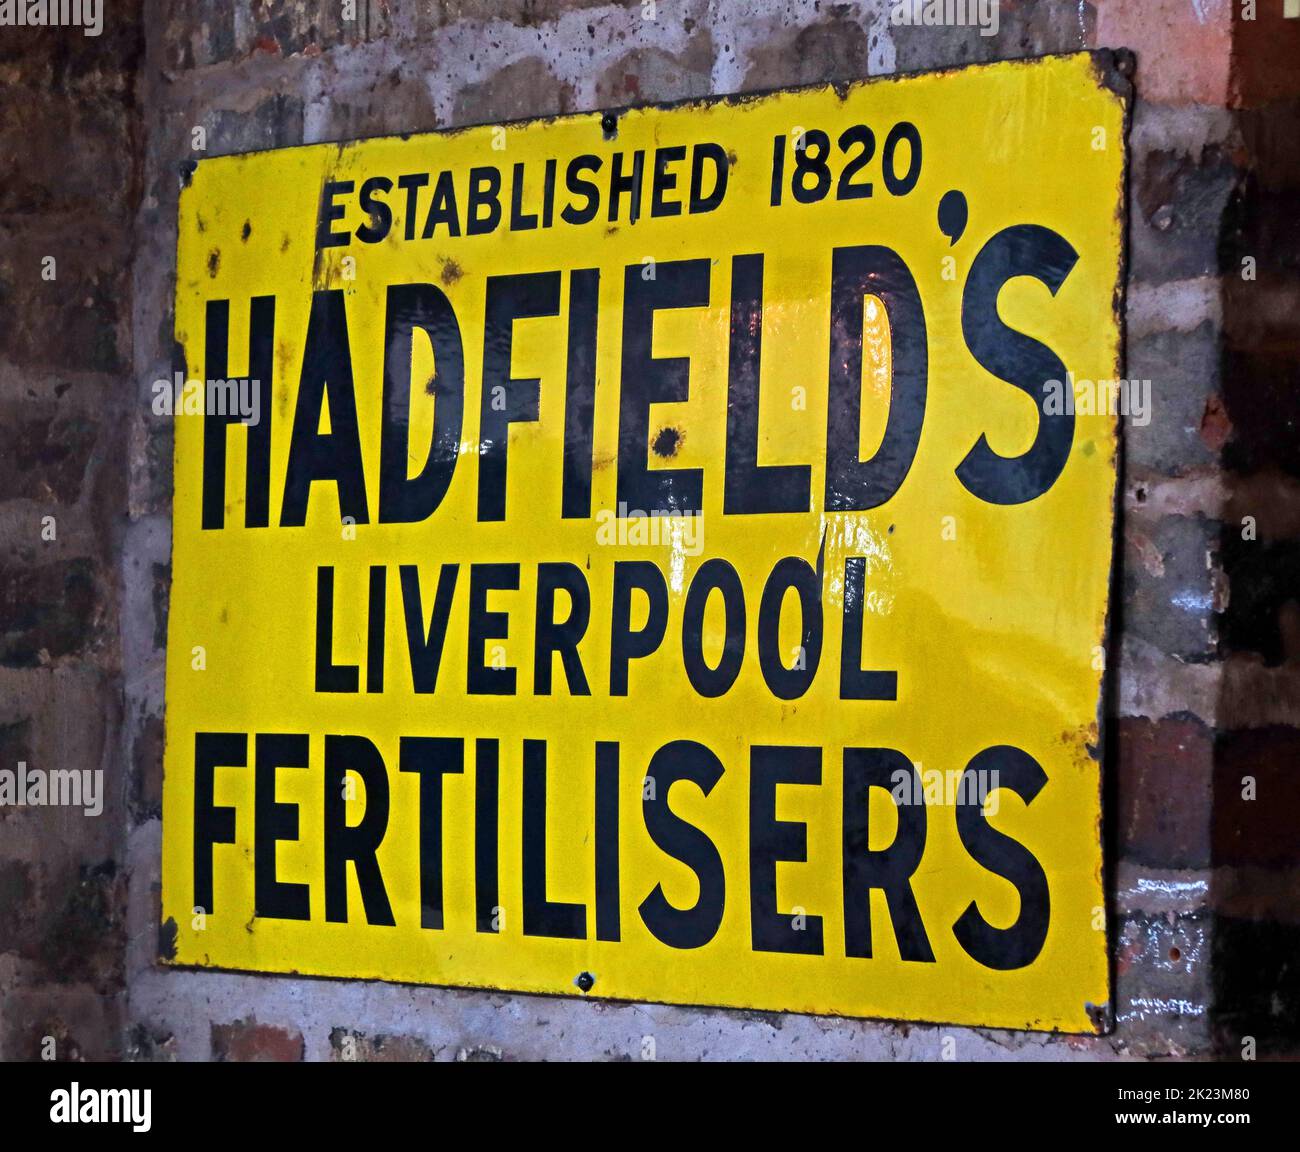 Enseigne métallique en émail jaune, Hadfields Liverpool Fertilizers, créée en 1820, publicité Banque D'Images